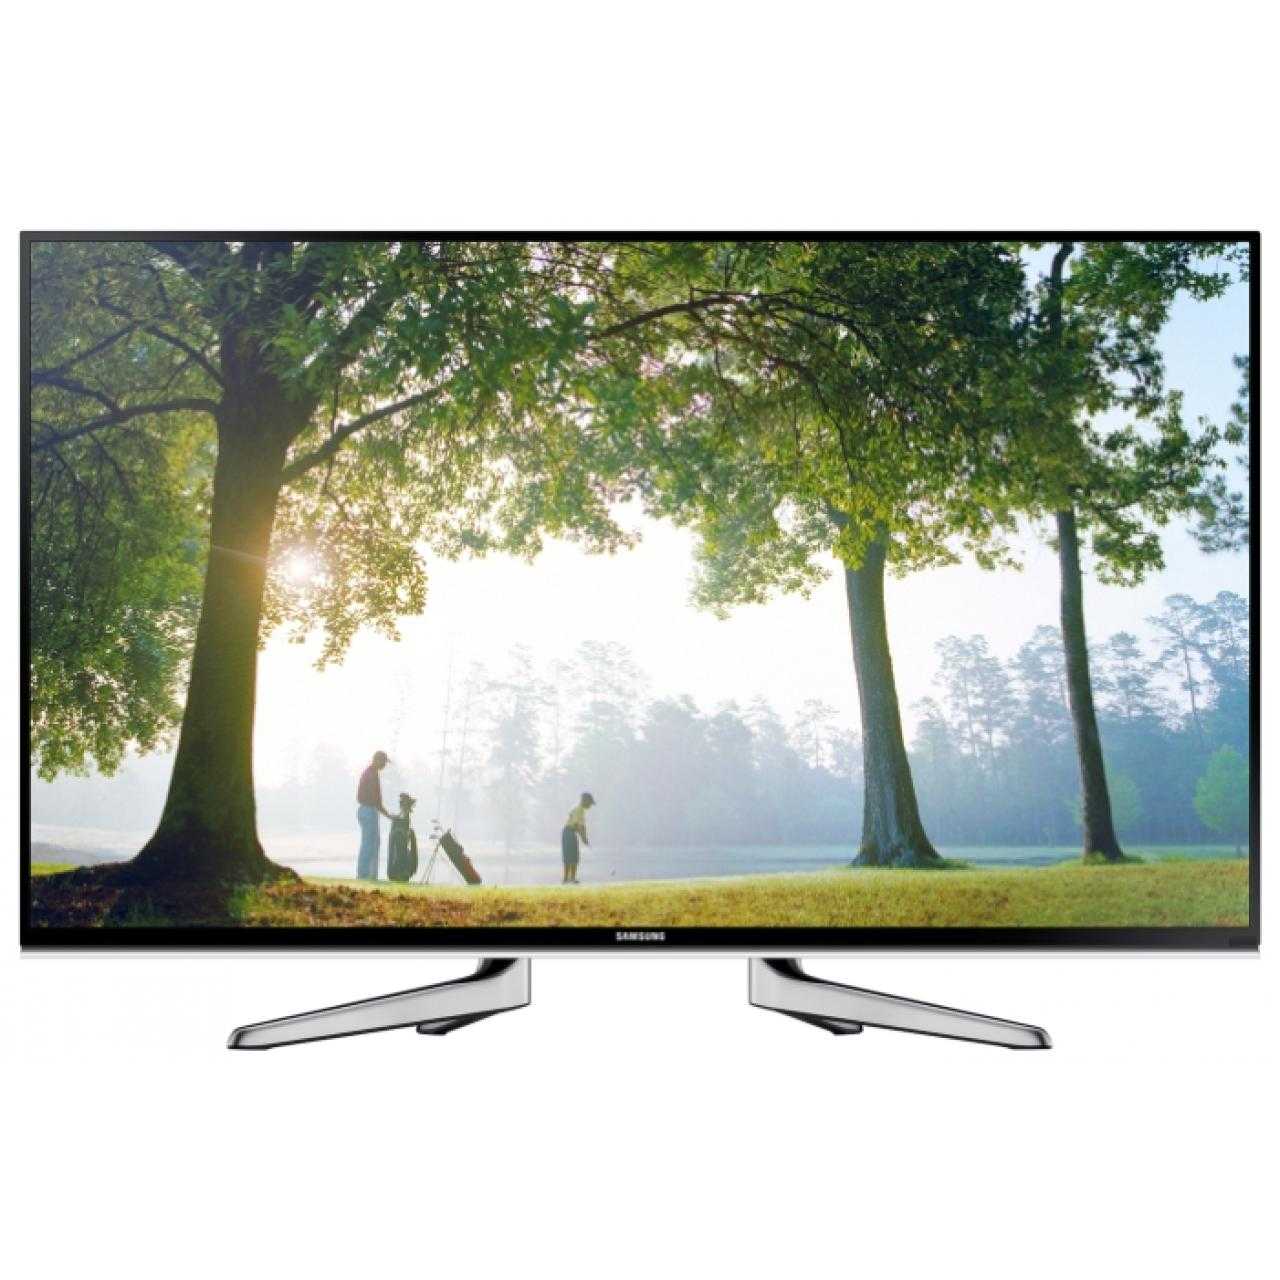 Телевизор Samsung UE48H6500 - подробные характеристики обзоры видео фото Цены в интернет-магазинах где можно купить телевизор Samsung UE48H6500